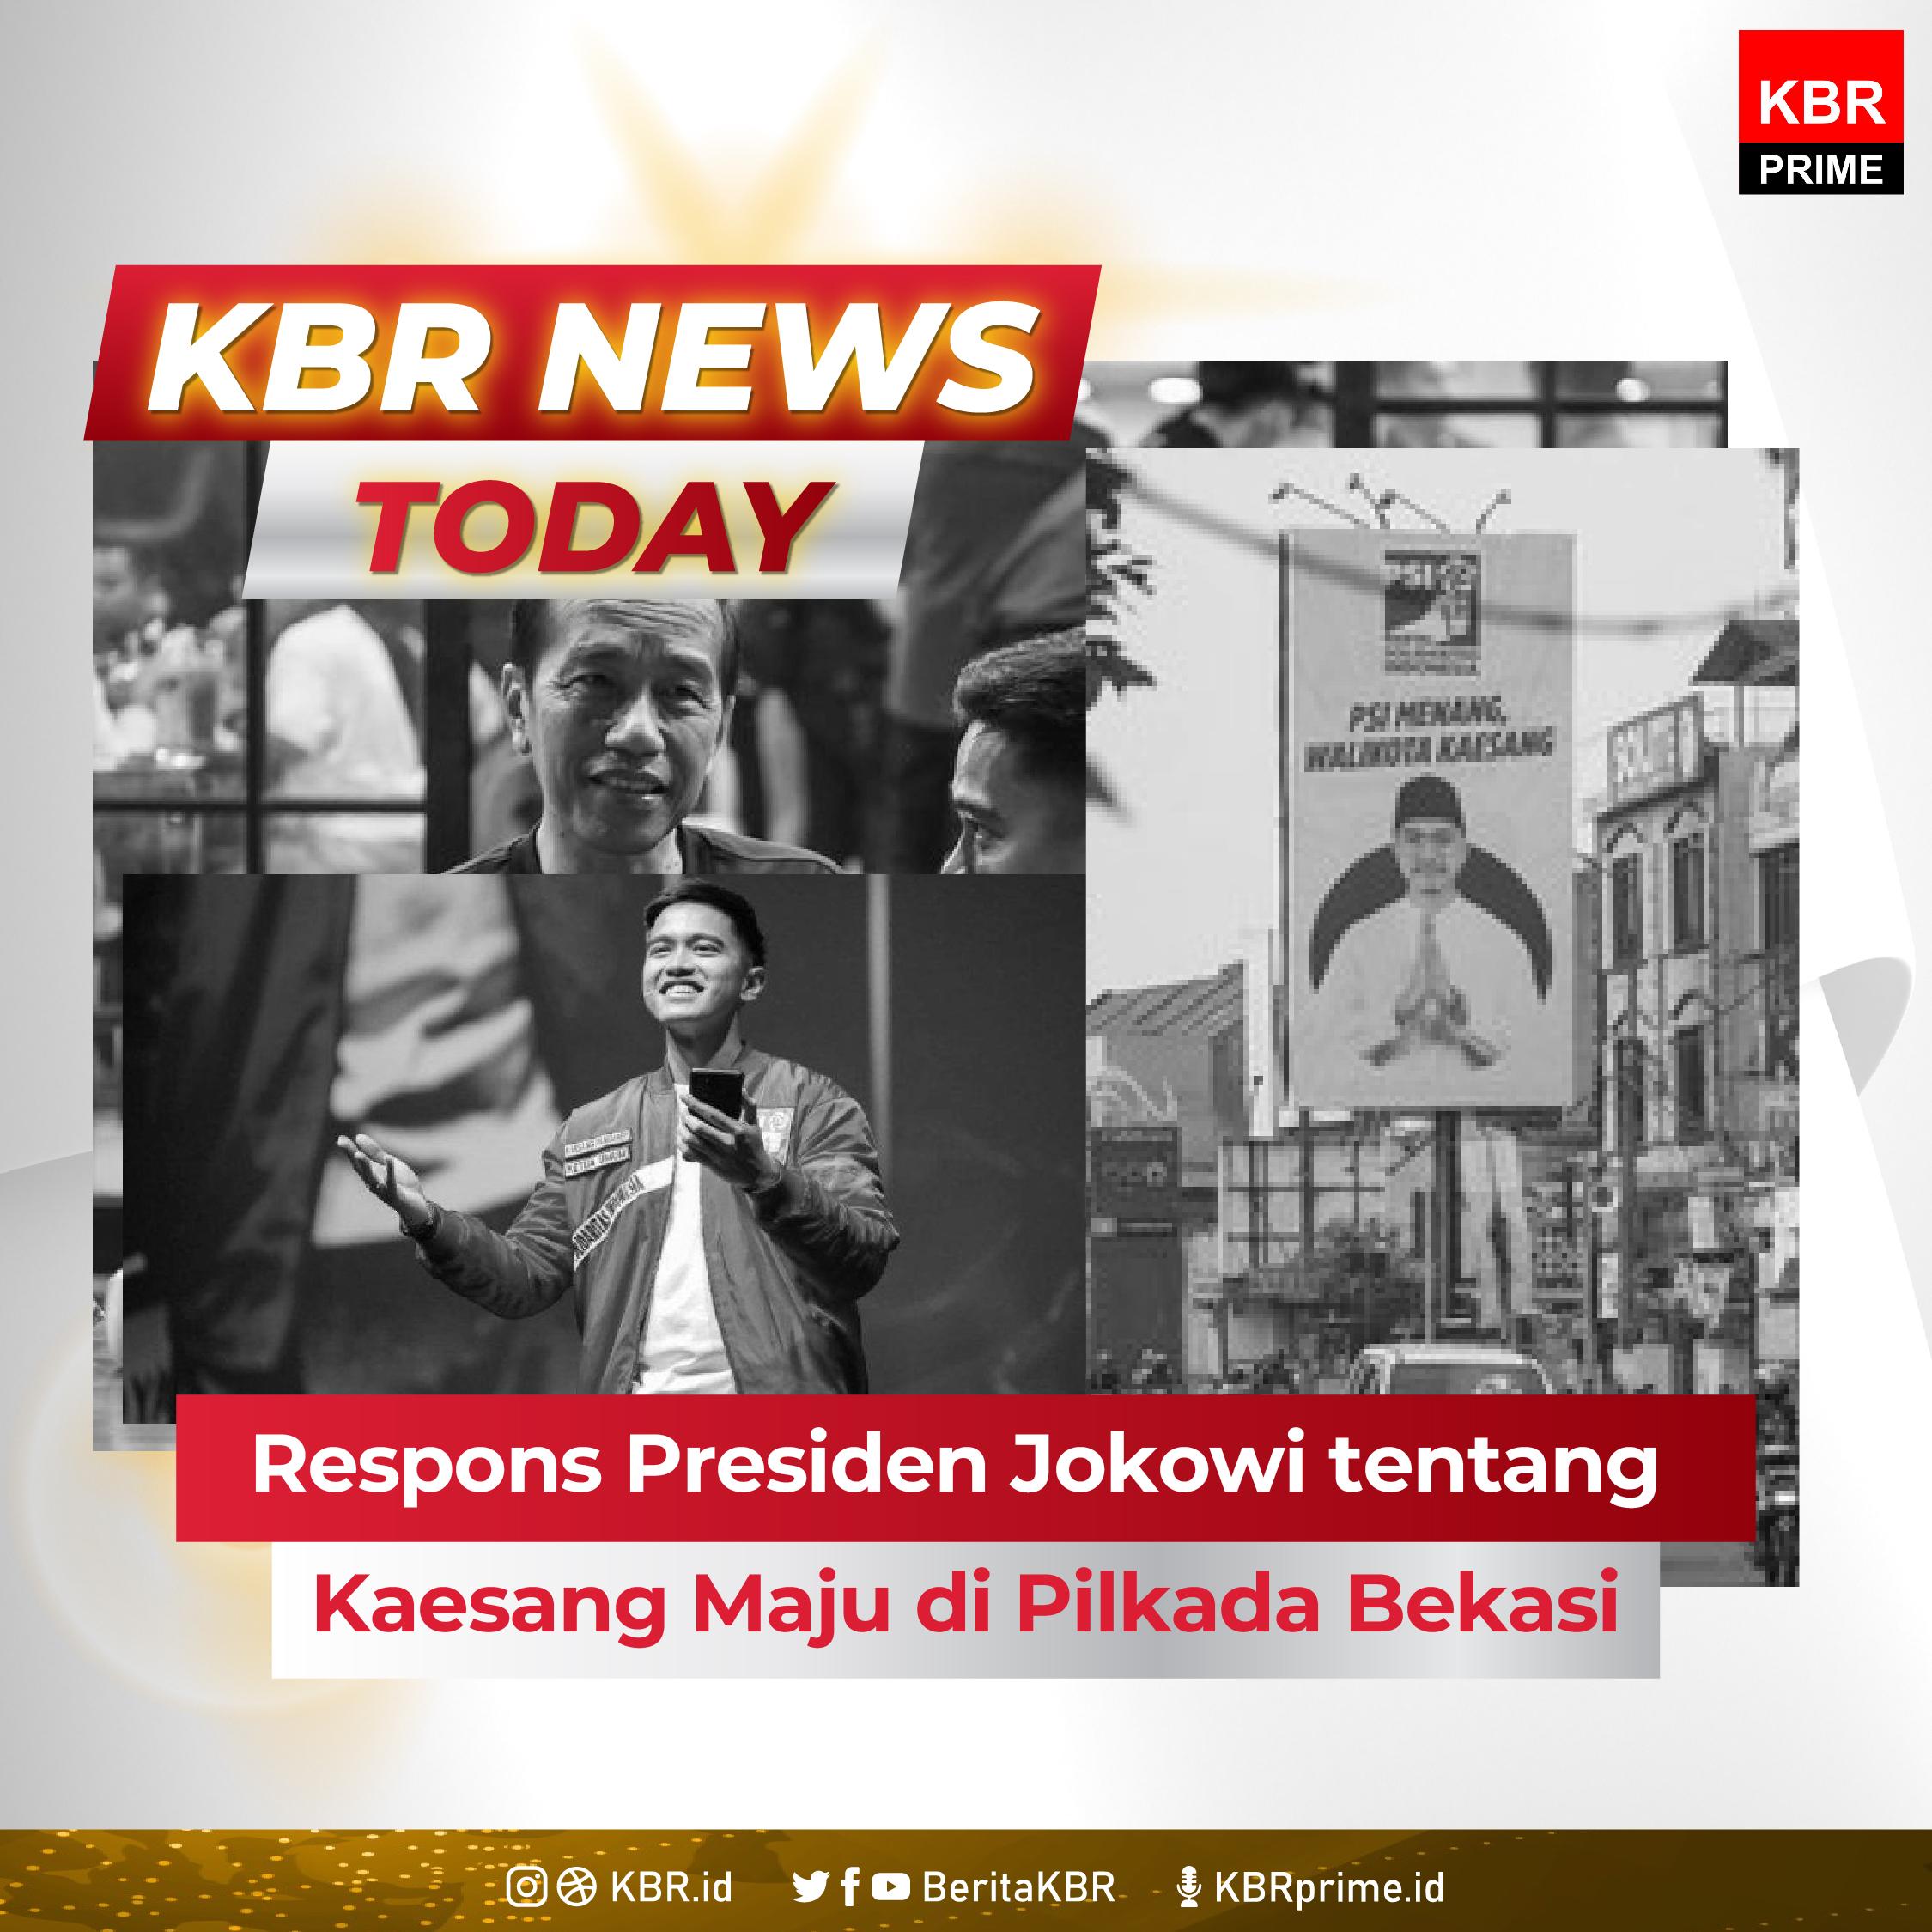 Respons Presiden Jokowi tentang Kaesang Maju di Pilkada Bekasi